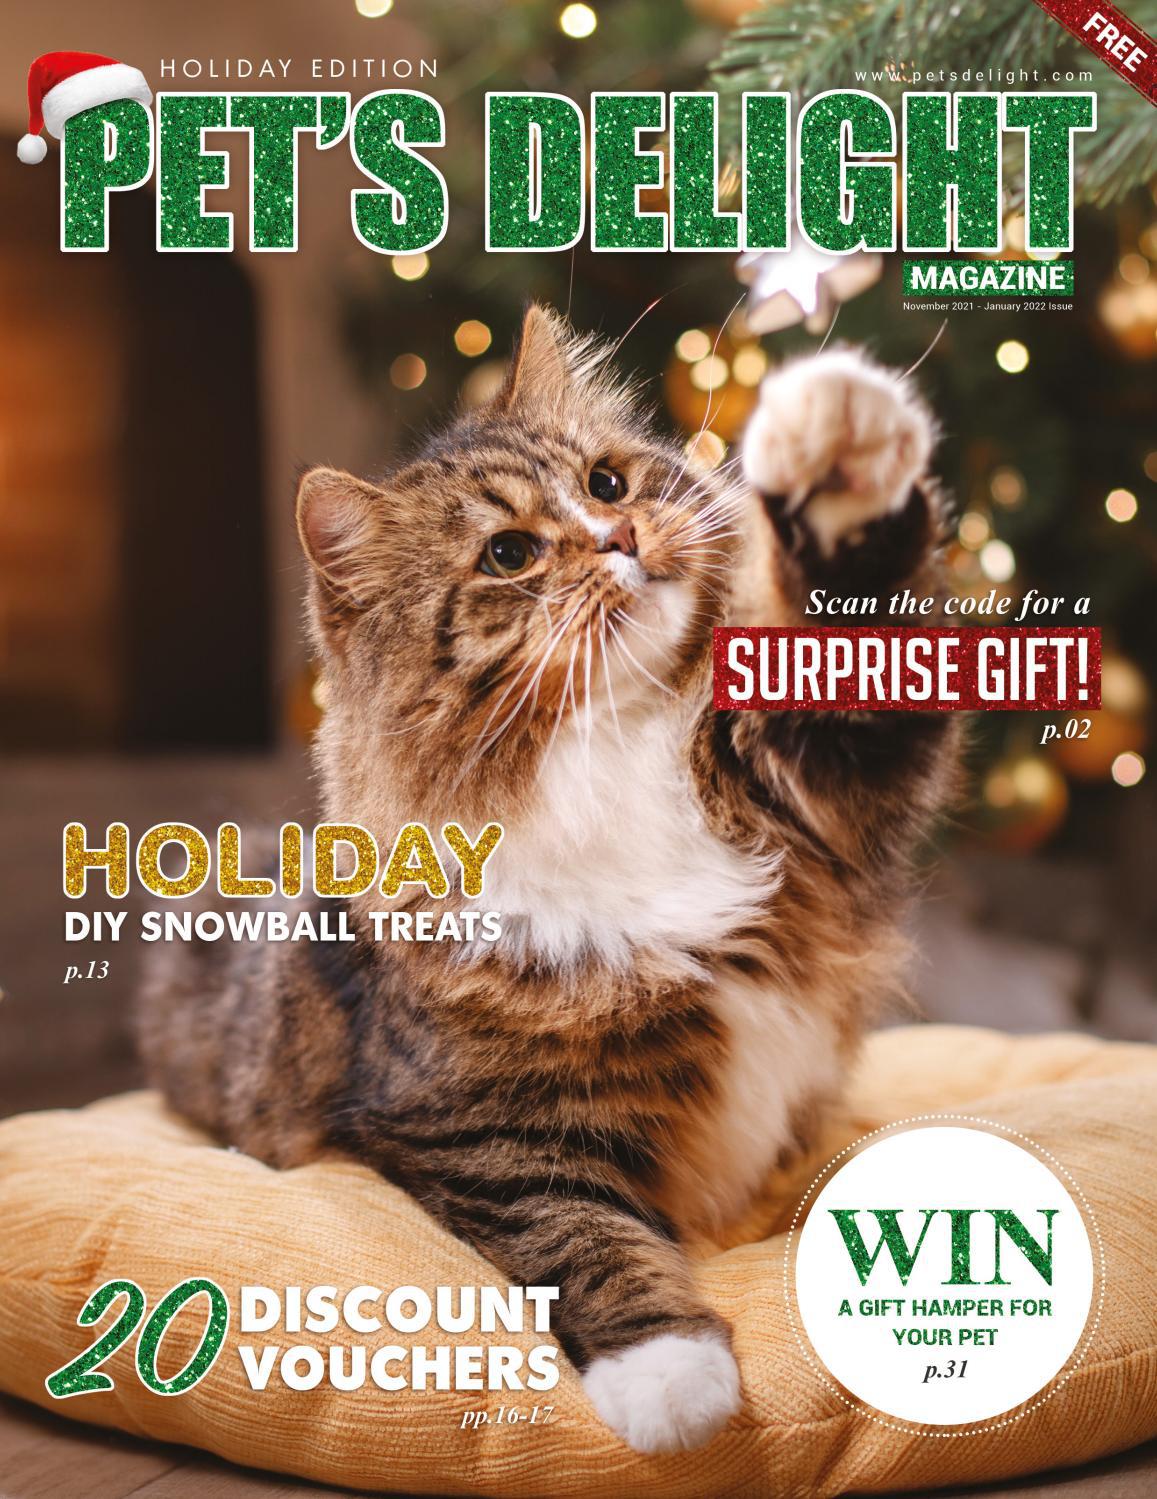 Pet's Delight Magazine. Holiday edition, November 2021 — January 2022